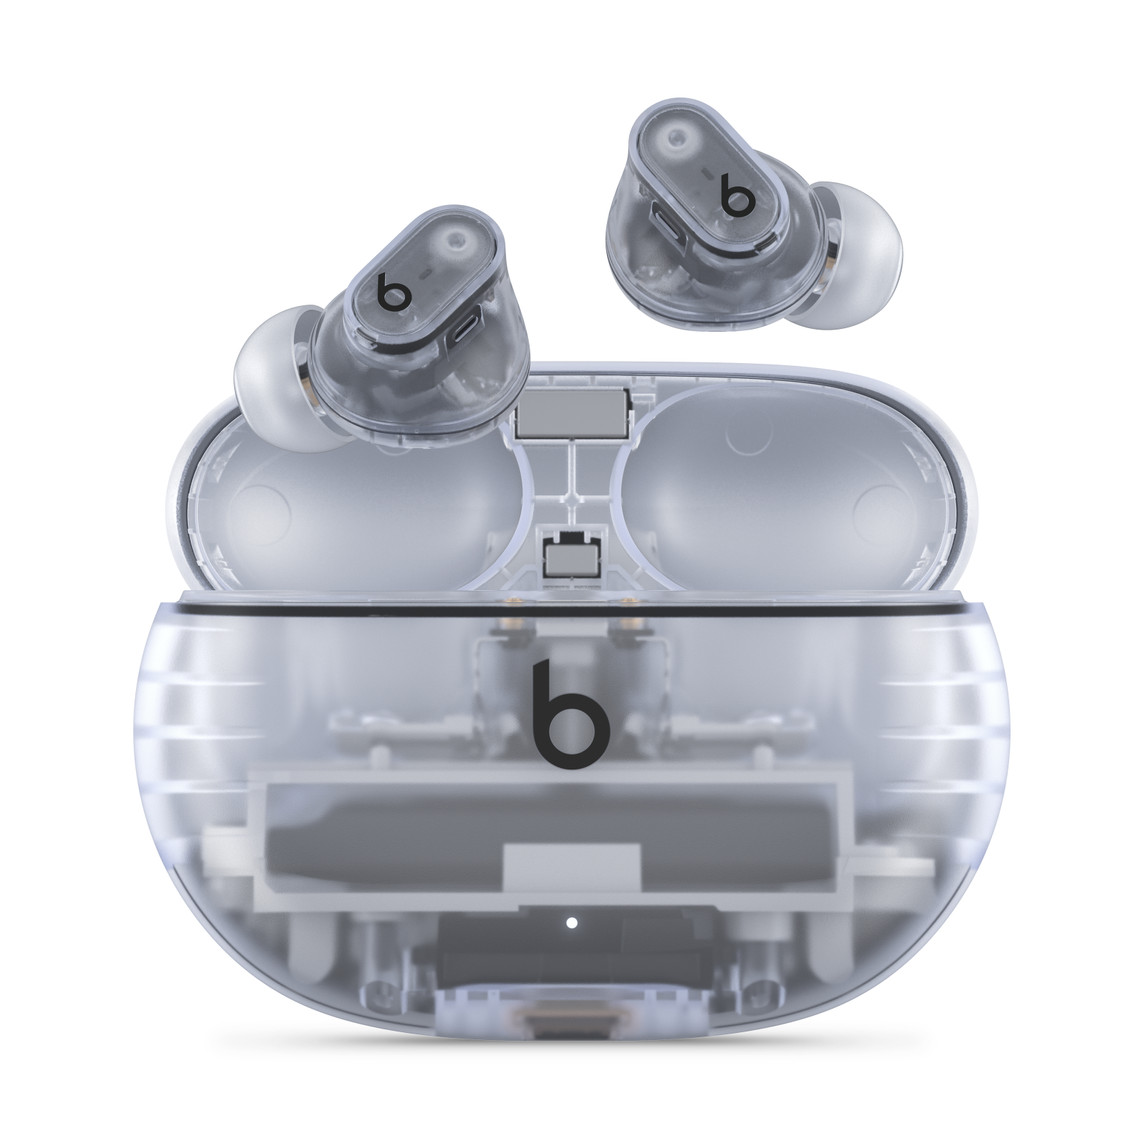 Beats Studio Buds + Komplett kabellose Noise Cancelling In-Ear Kopfhörer mit Beats Logo in Transparent über dem praktischen Ladecase.